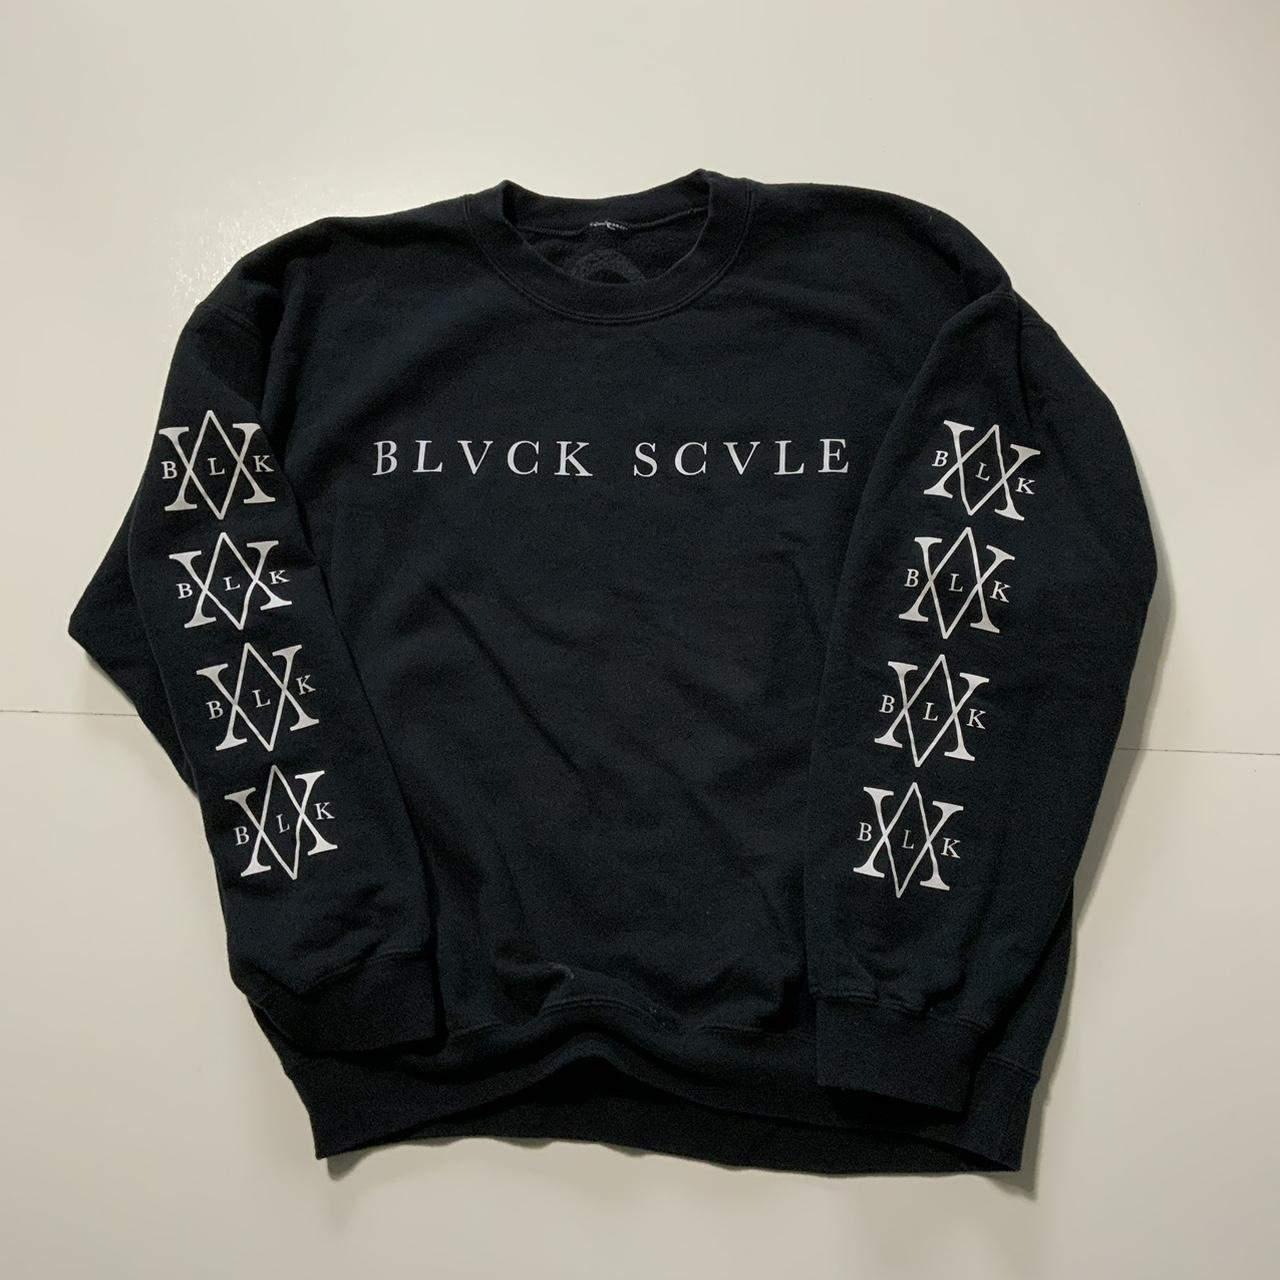 Black Scale Men's Sweatshirt